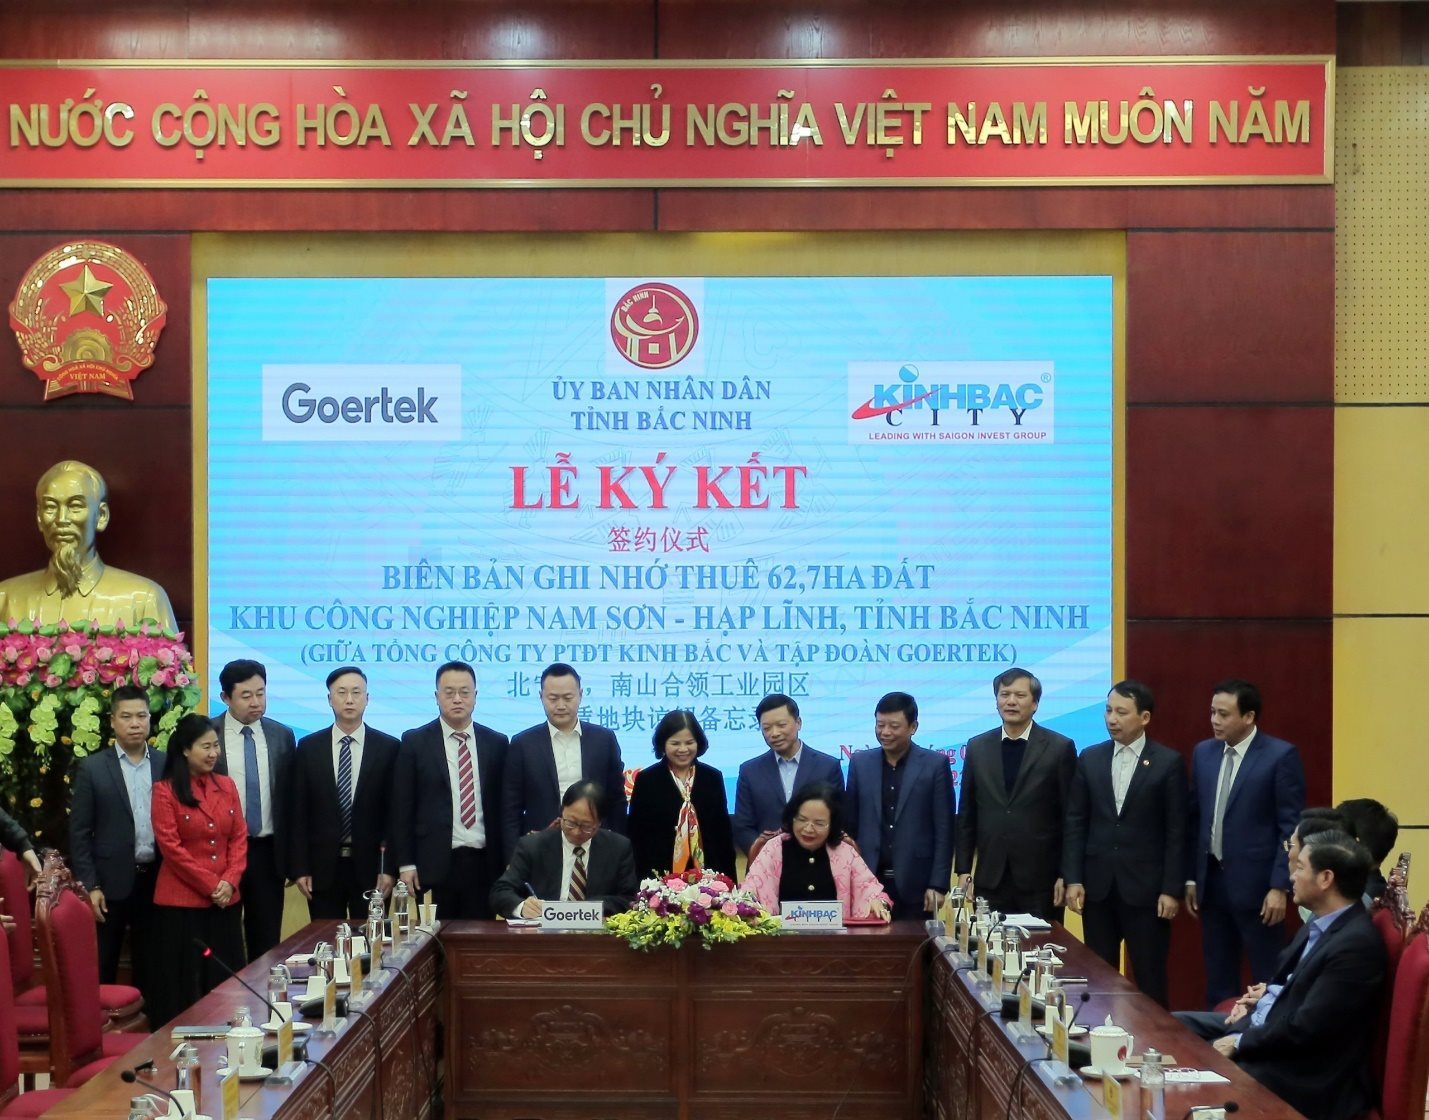 Goertek - một trong những đối tác lớn nhất của Apple ký MoU thuê 62,7ha tại KCN Nam Sơn - Hạp Lĩnh của Kinh Bắc (KBC)